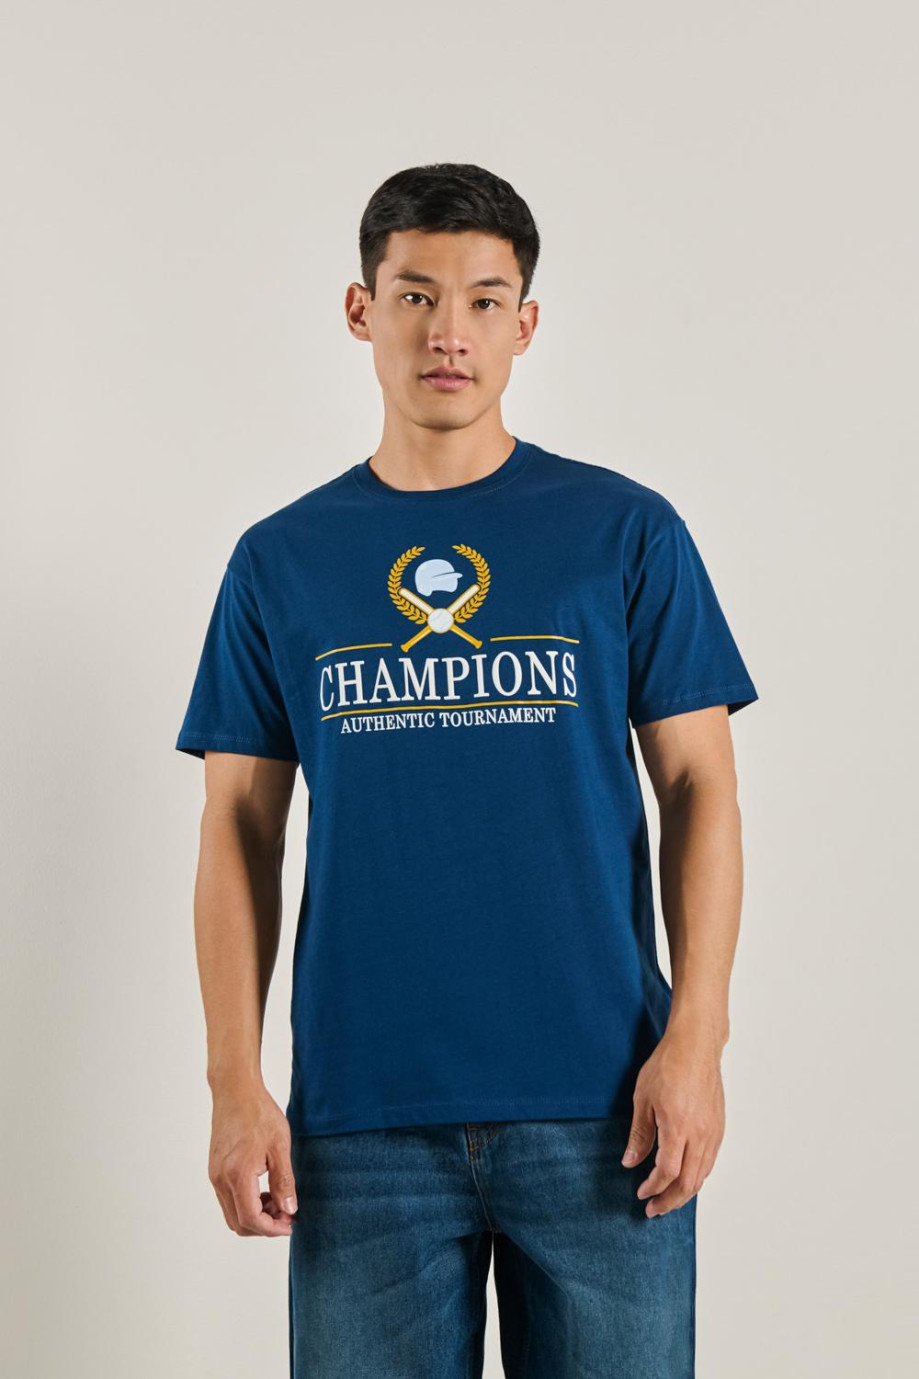 Camiseta azul oscura con cuello redondo y estampado college